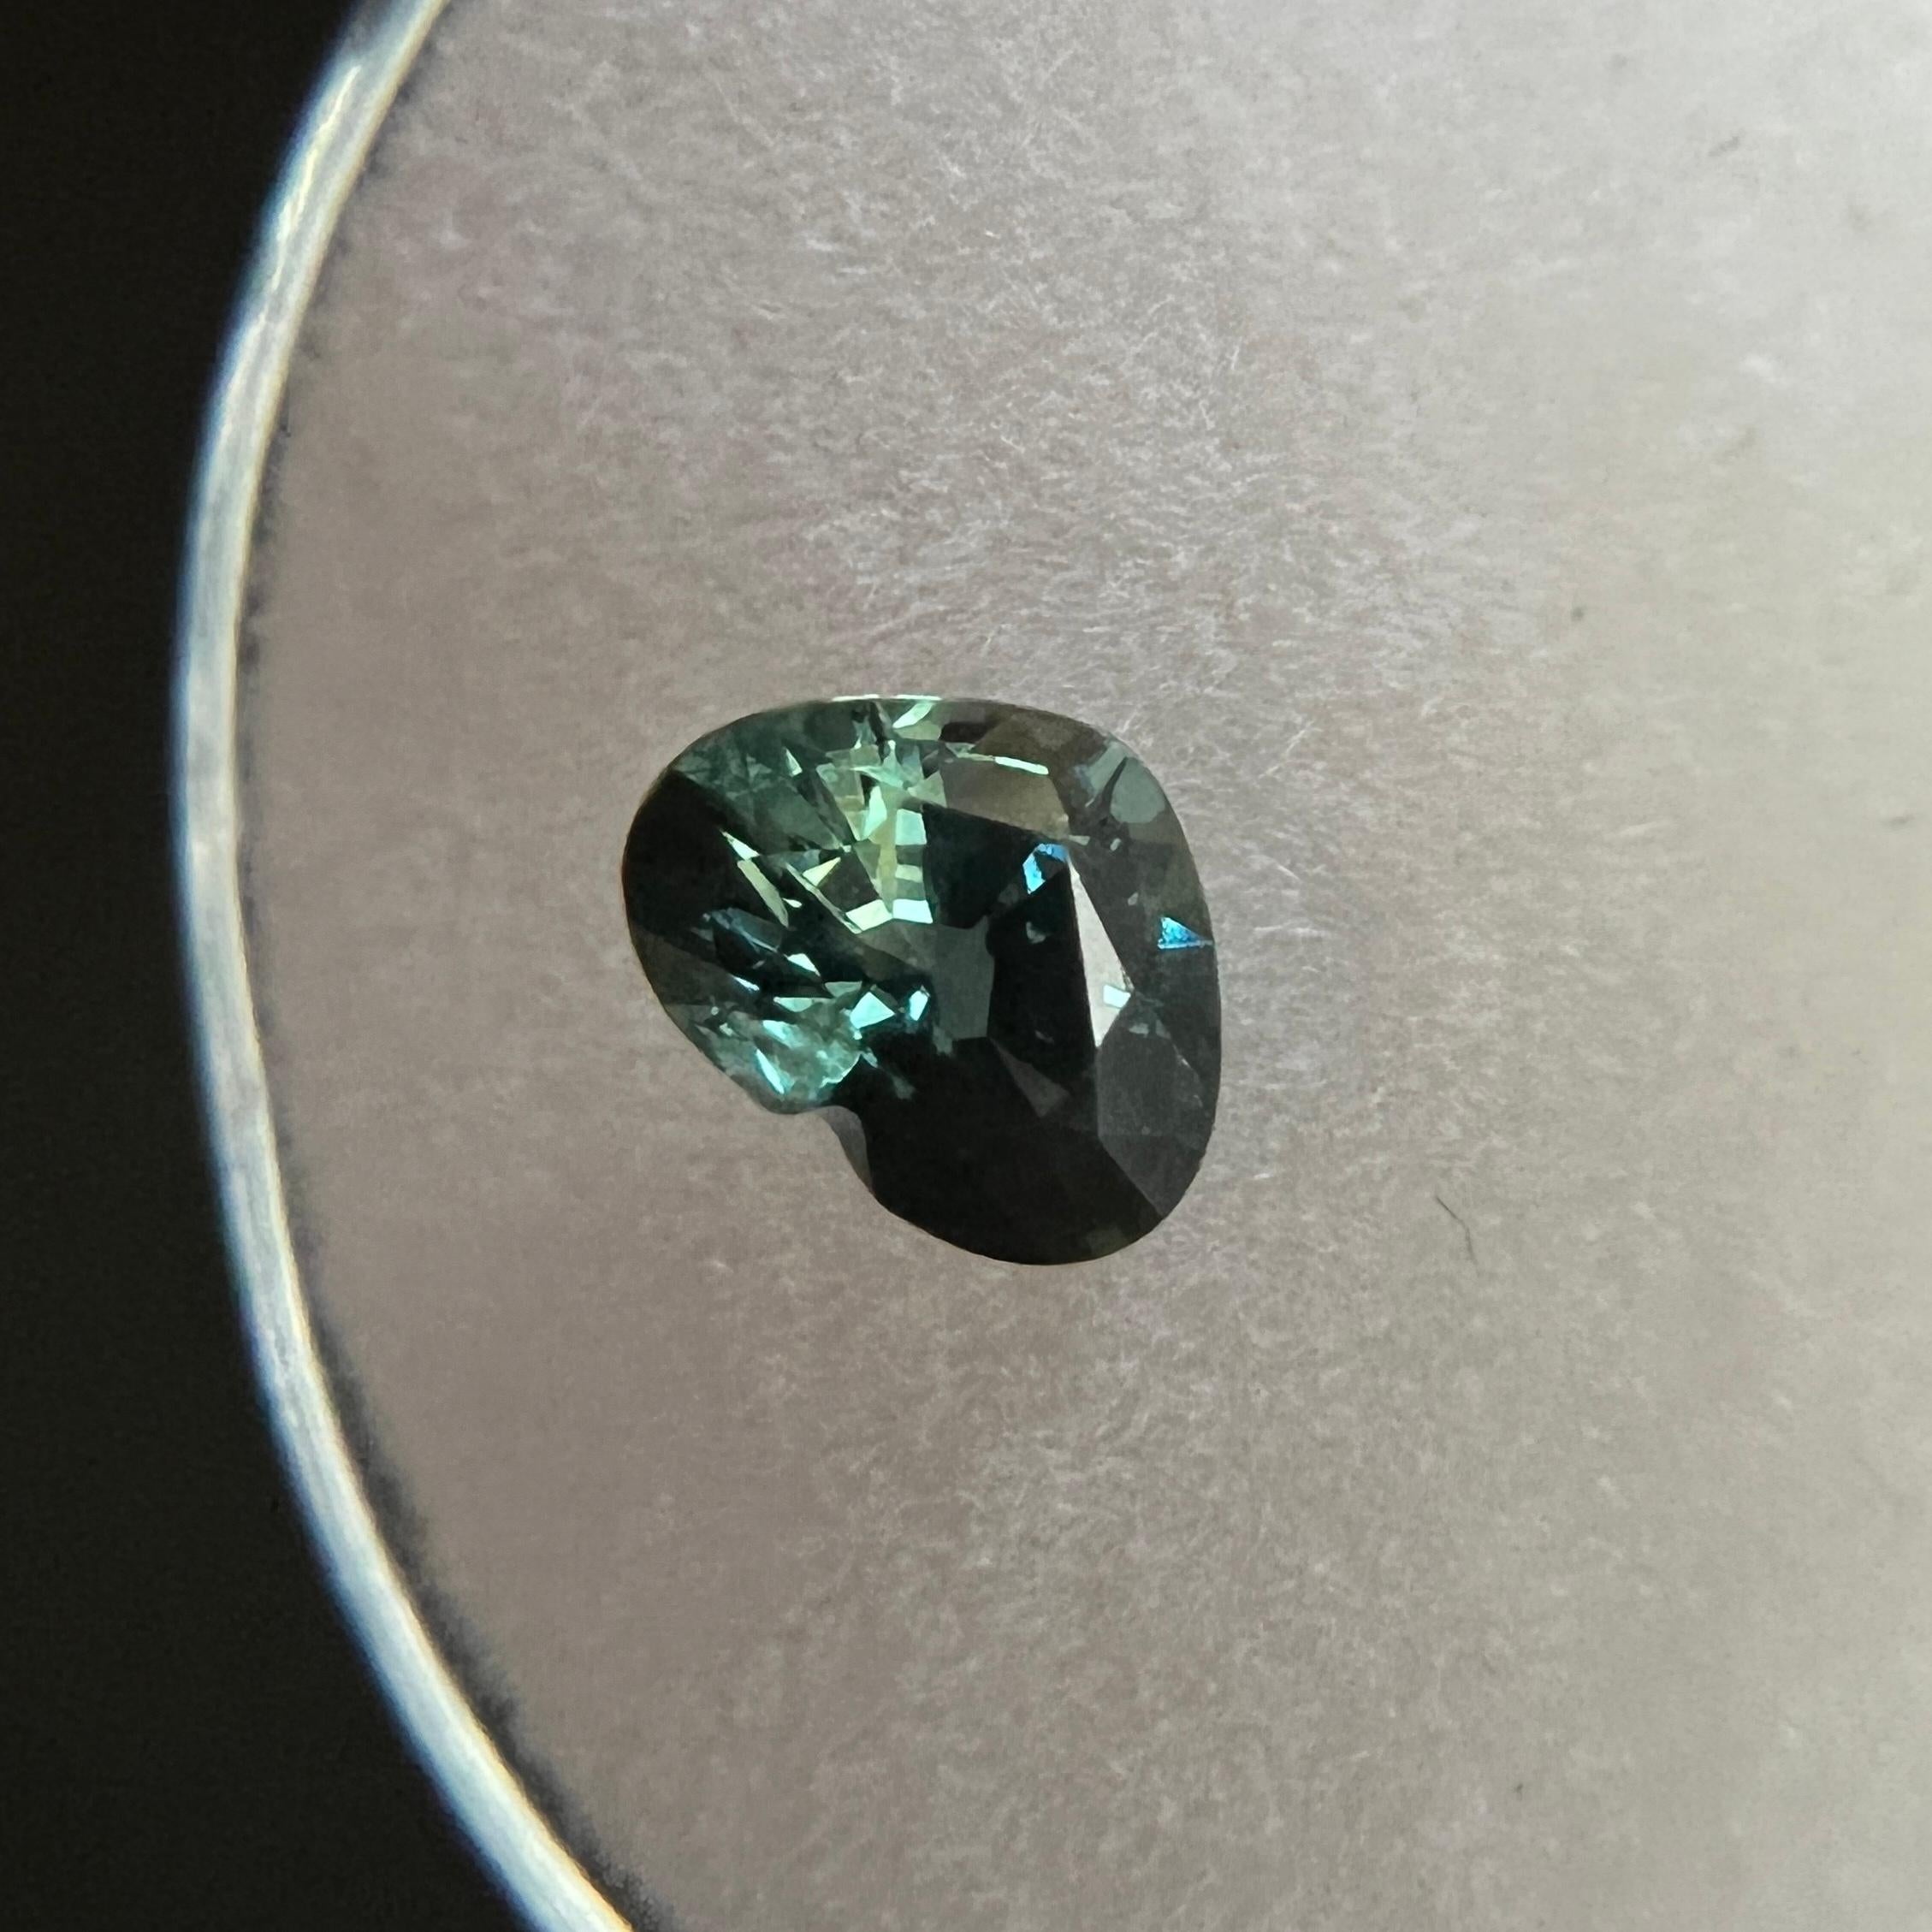 bi-colored sapphire from australia